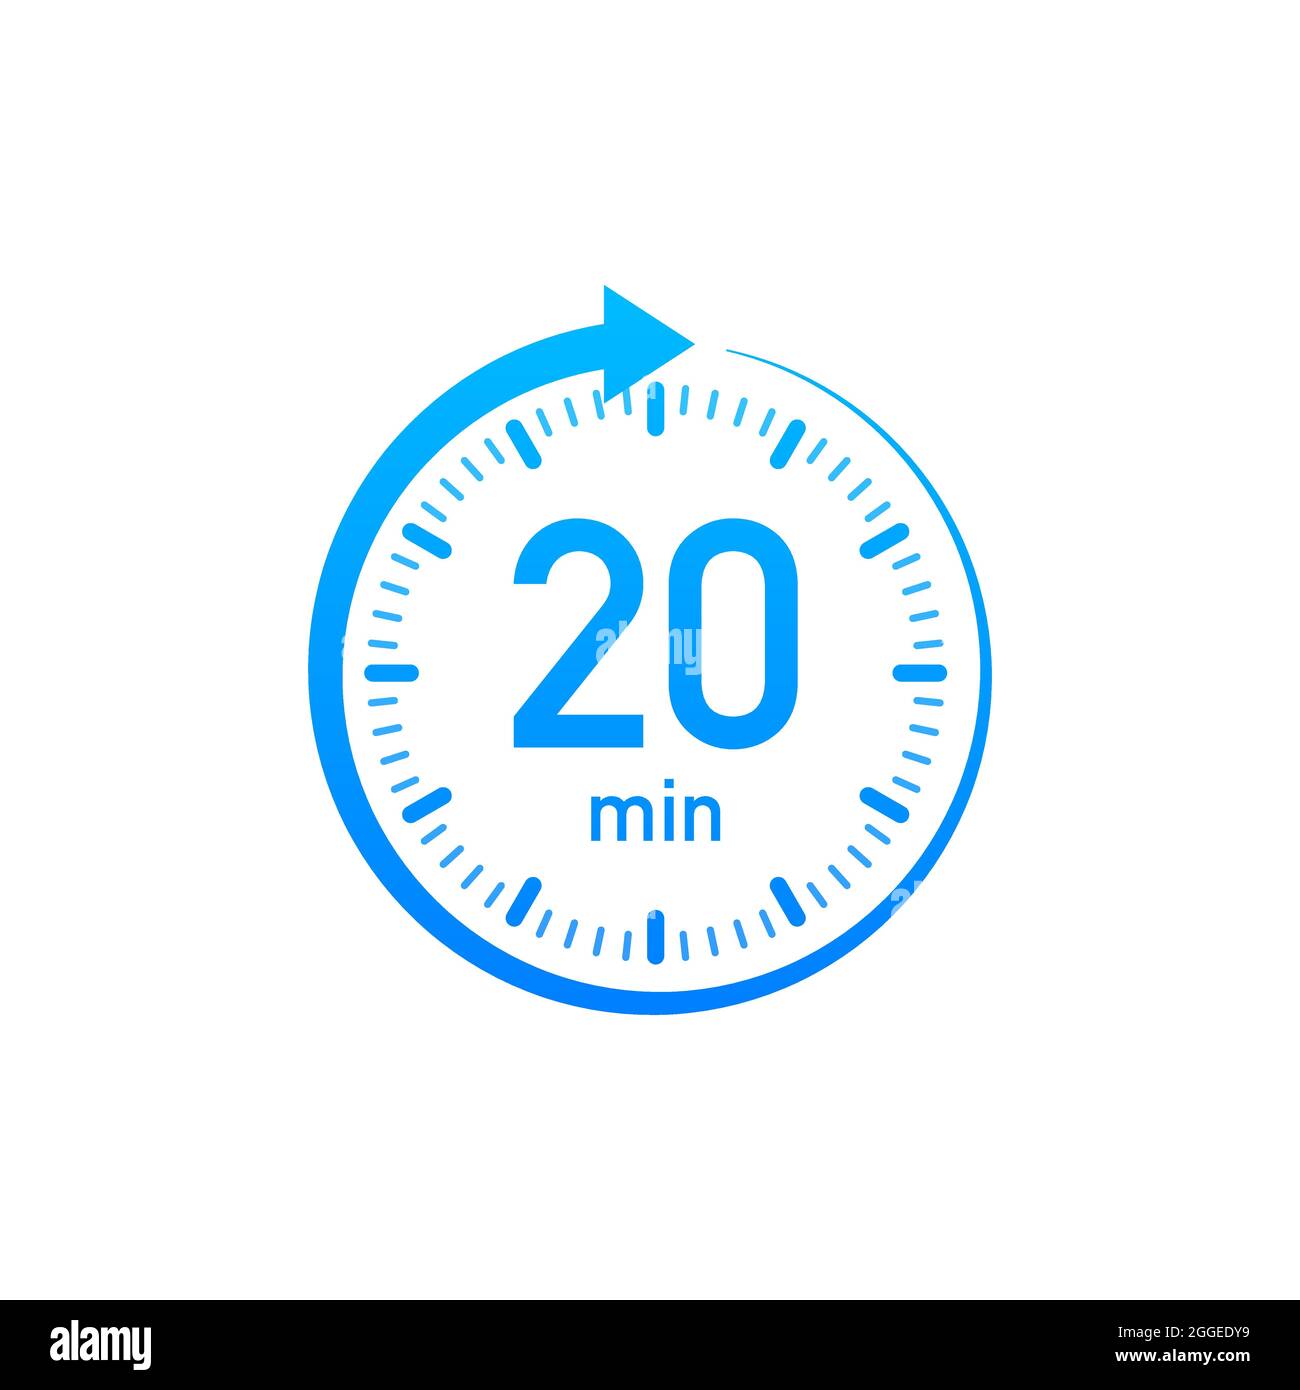 Das Vektorsymbol für die Stoppuhr für 20 Minuten. Stoppuhrsymbol in flacher  Ausführung, Timer auf farbigem Hintergrund eingeschaltet. Vektorgrafik  Stock-Vektorgrafik - Alamy